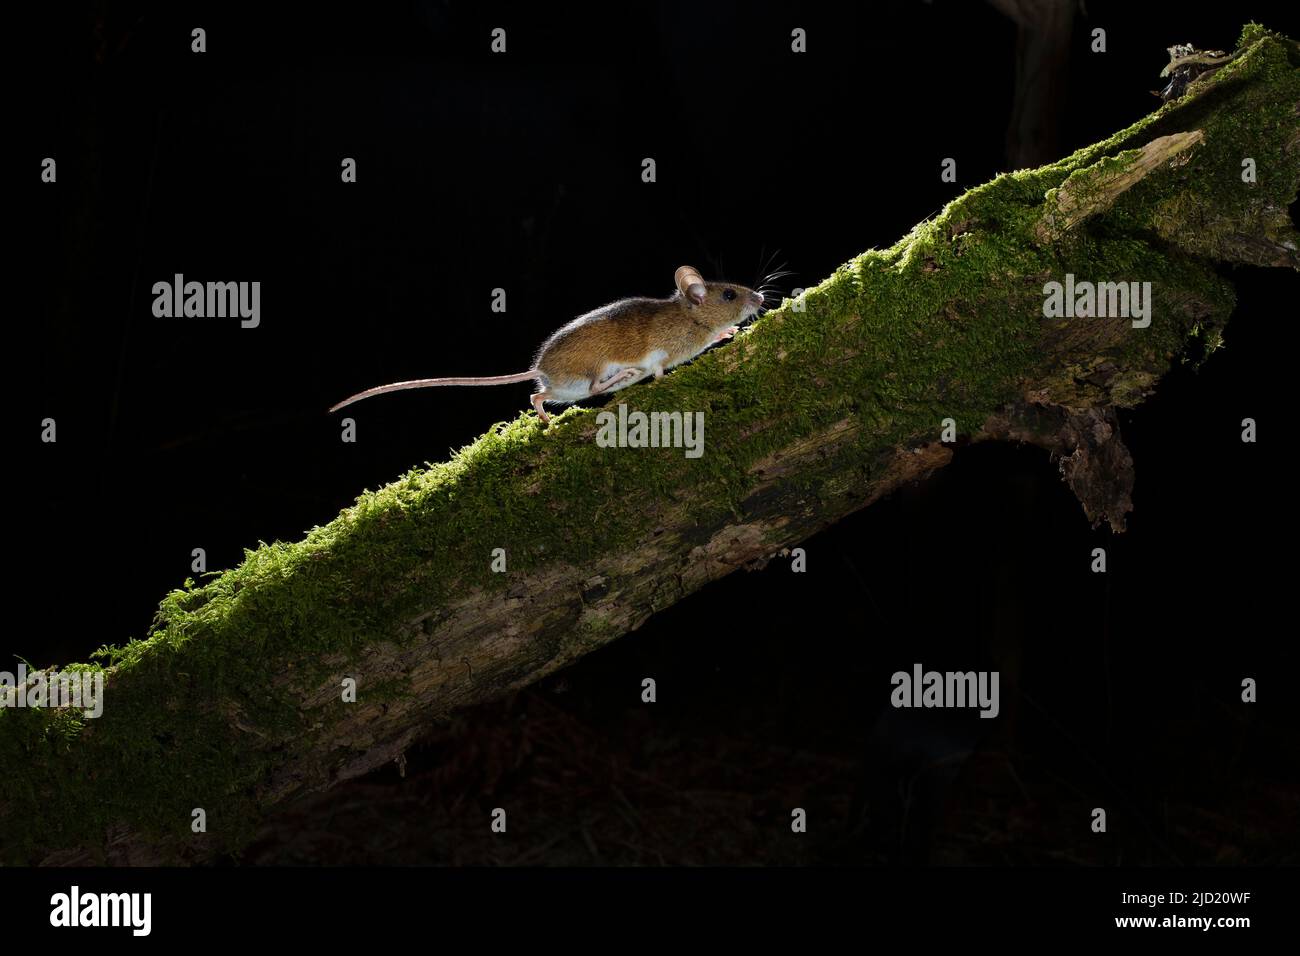 Un ratón de madera Apodemus sylvaticus corriendo una rama en el bosque por la noche Foto de stock